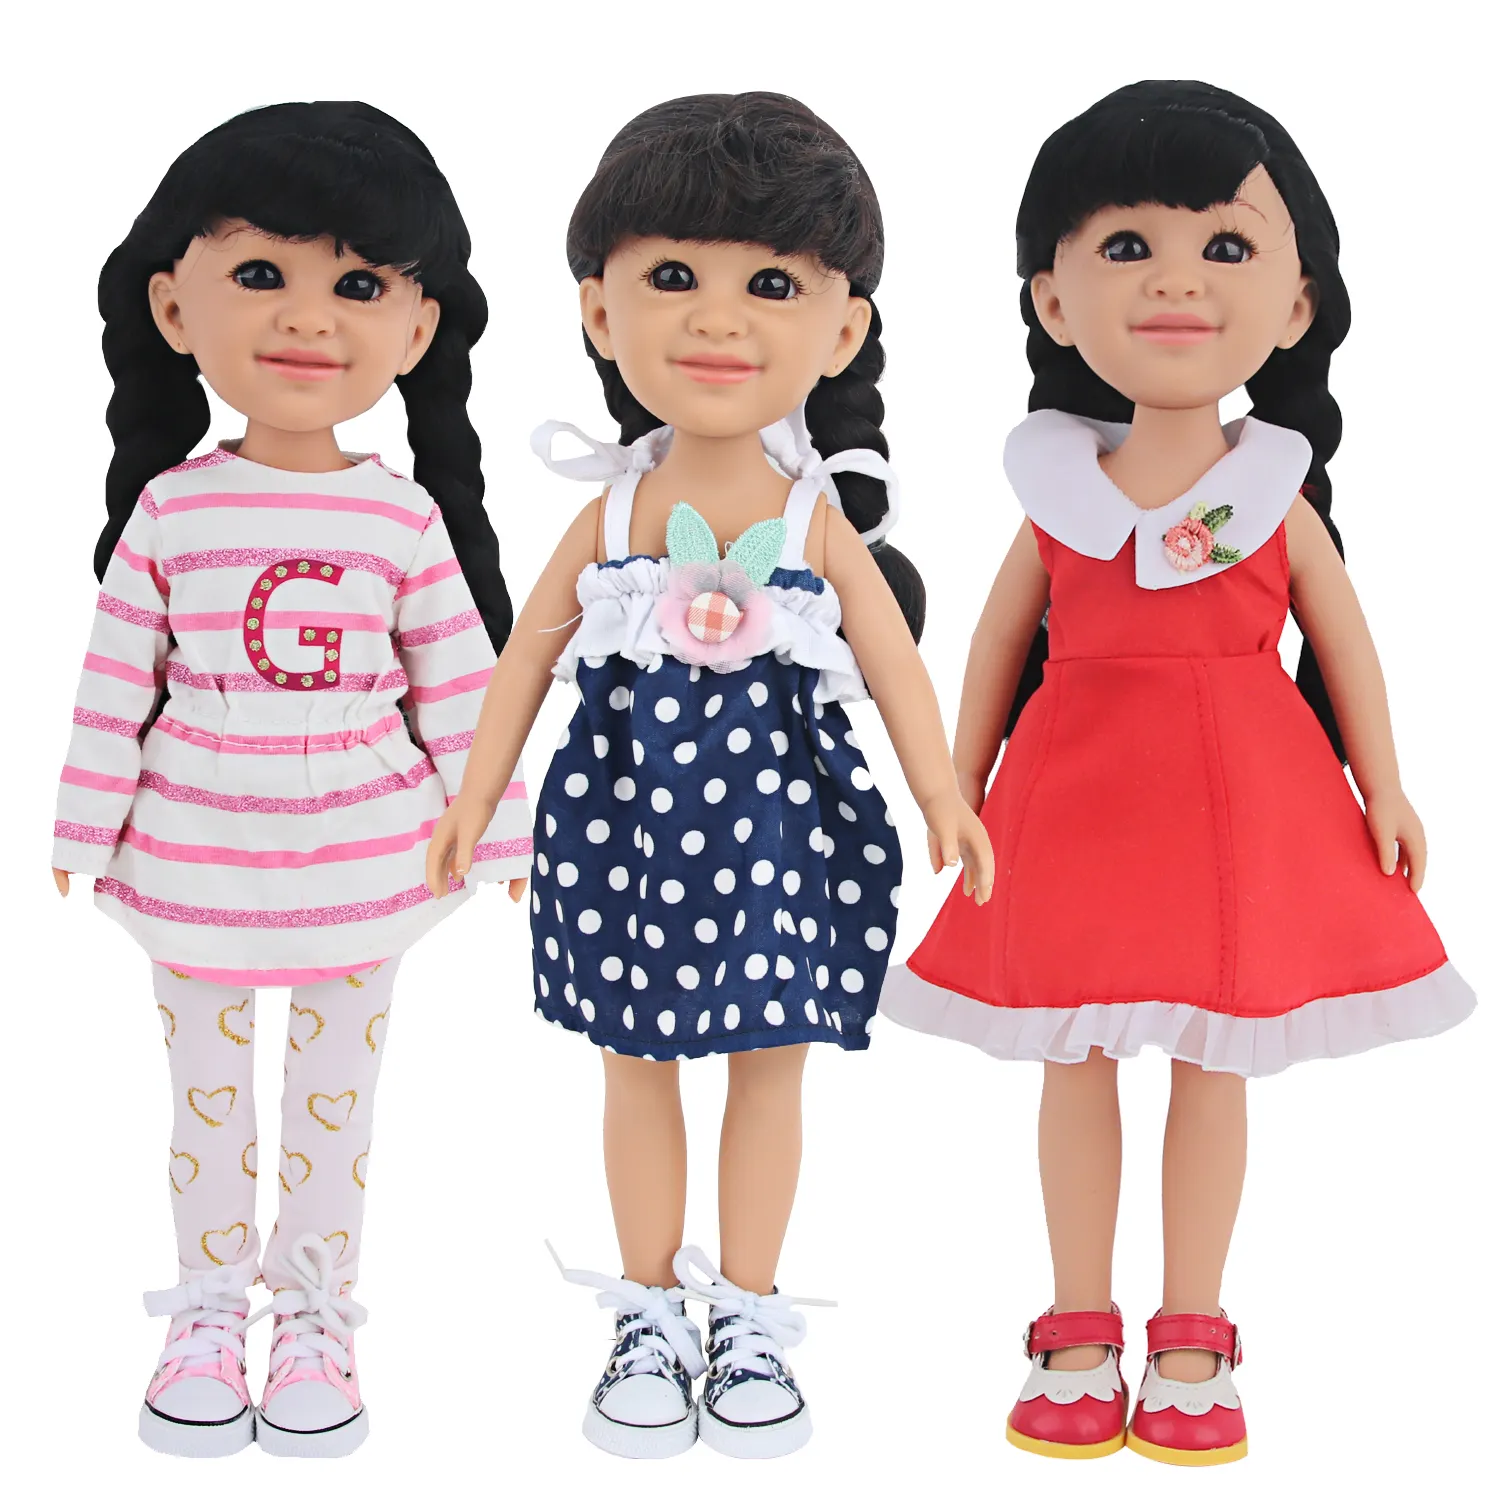 प्यारी 14'' विनाइल गुड़िया सजीव पूर्ण विनाइल नाटक खेलने वाले खिलौने 14 इंच गुड़िया लड़का लड़की